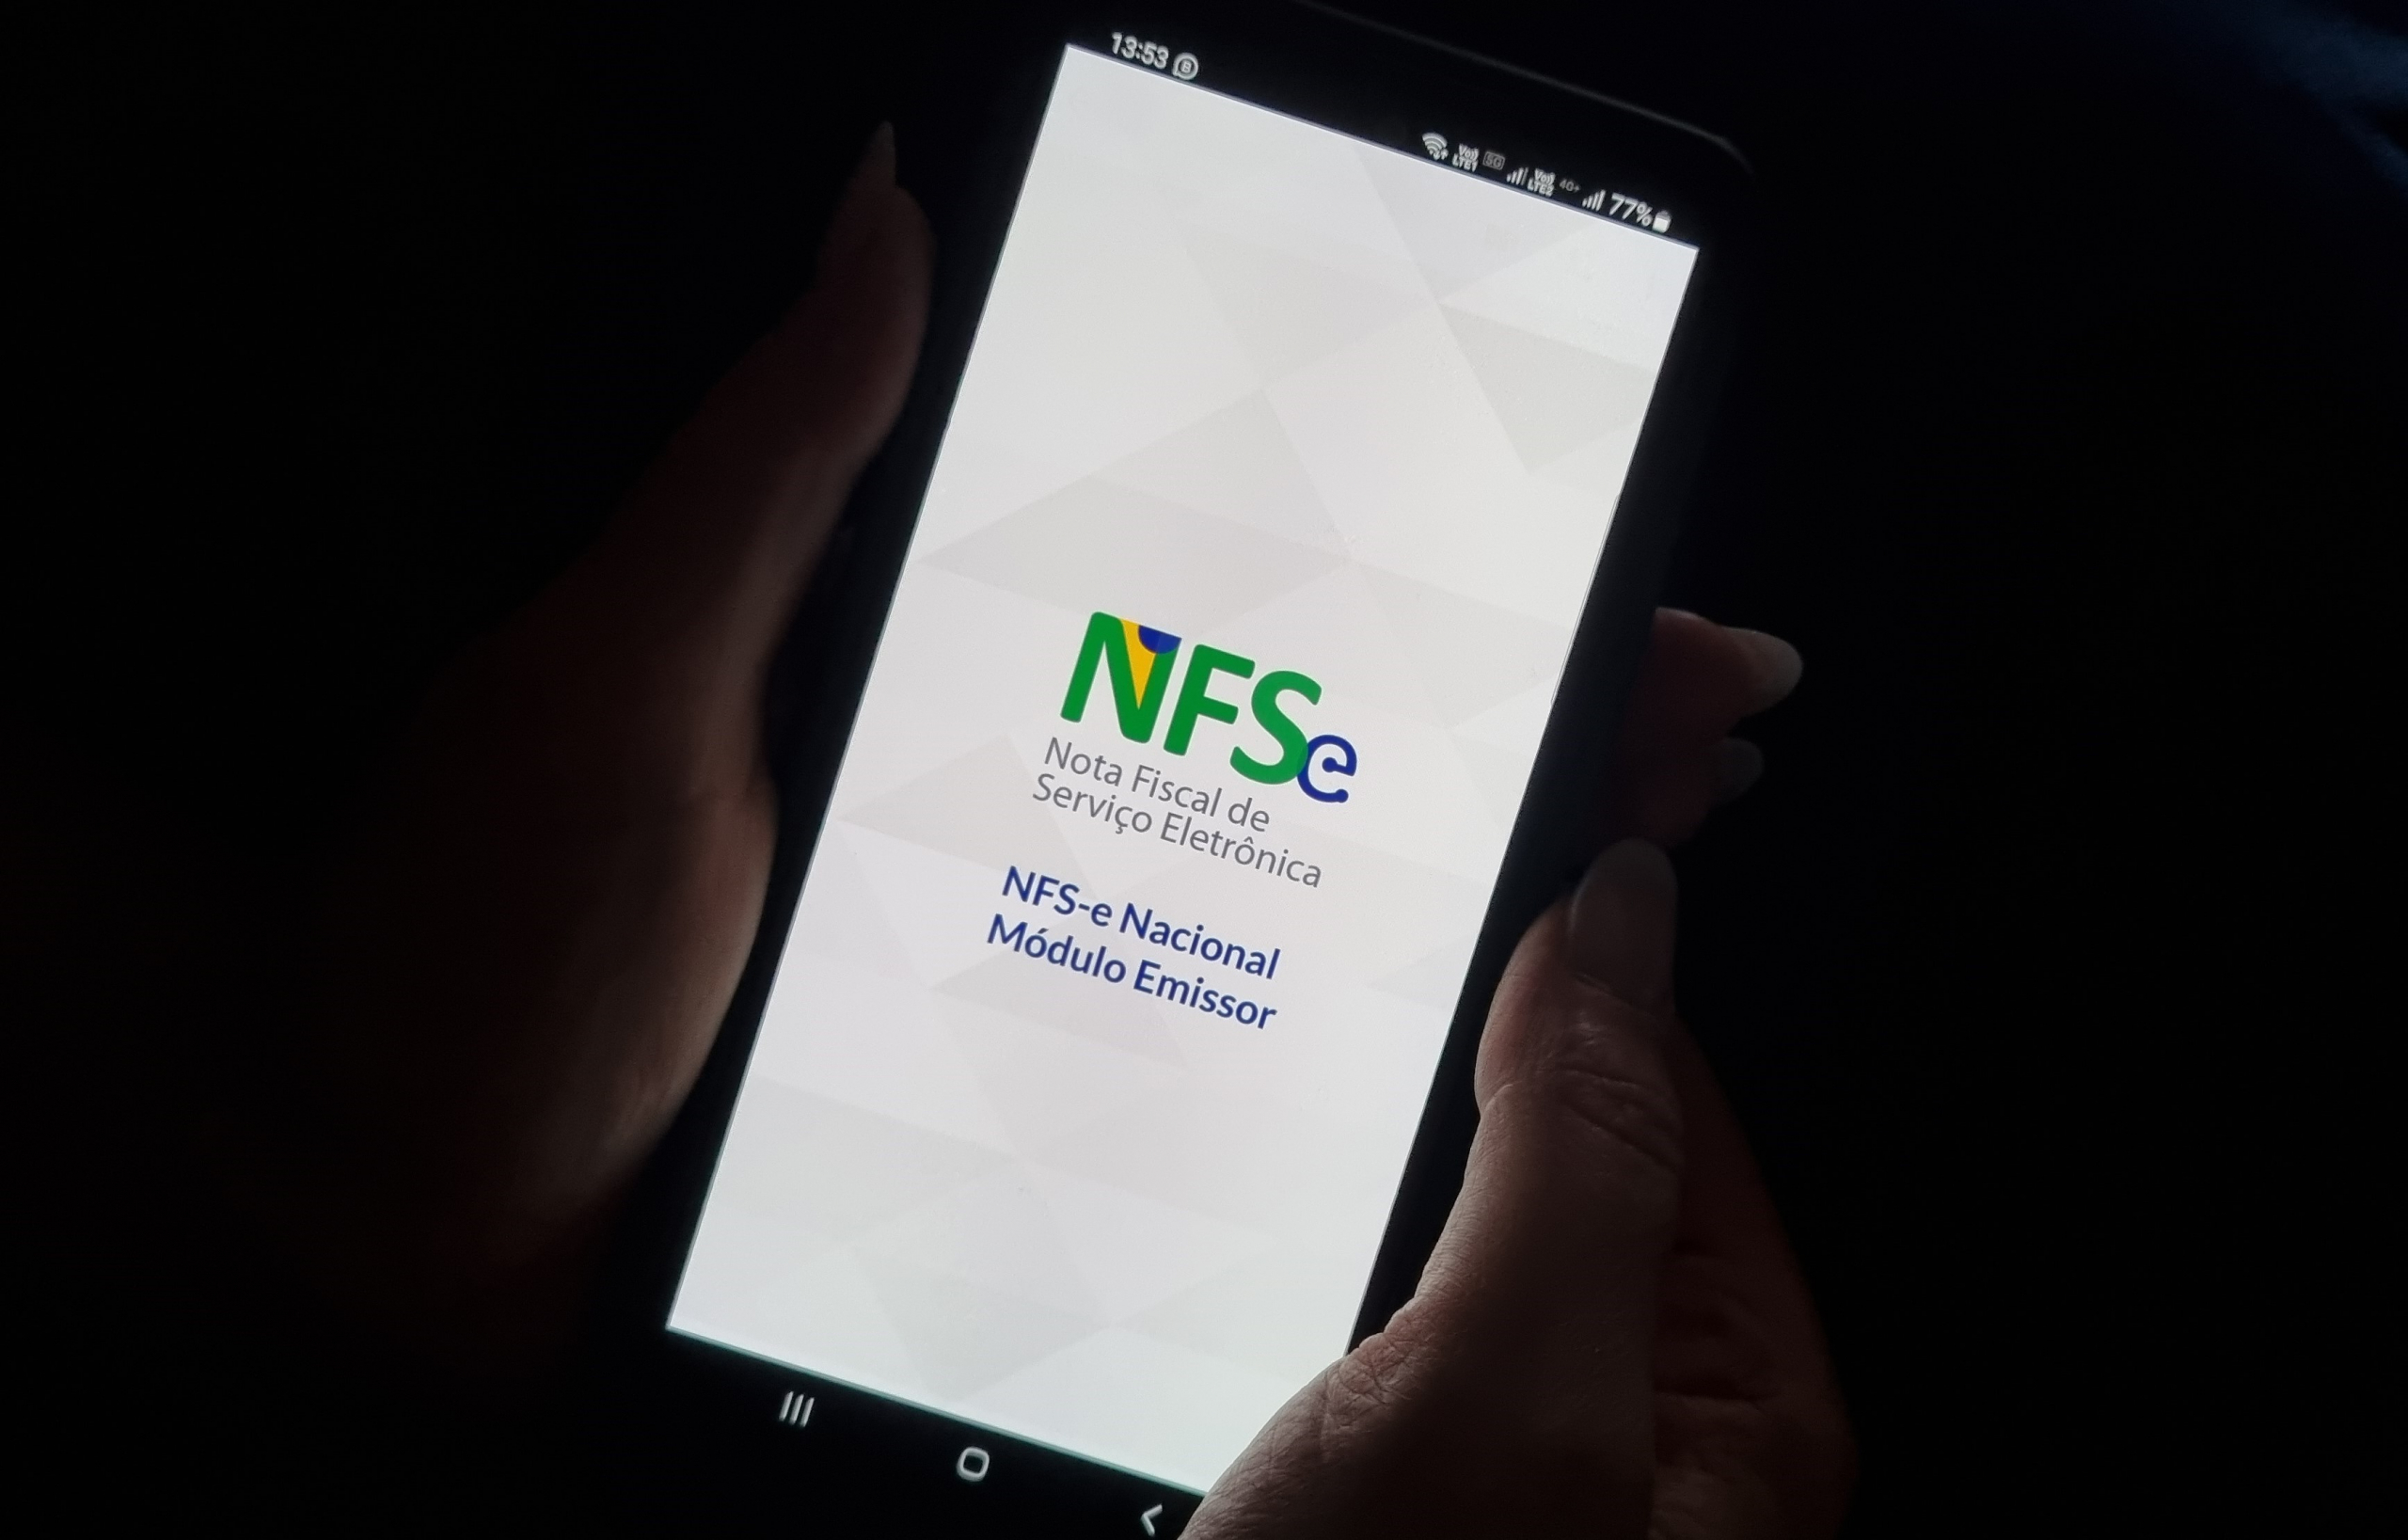 Comitê gestor do simples nacional prorroga início da obrigação da NFSe para  MEI